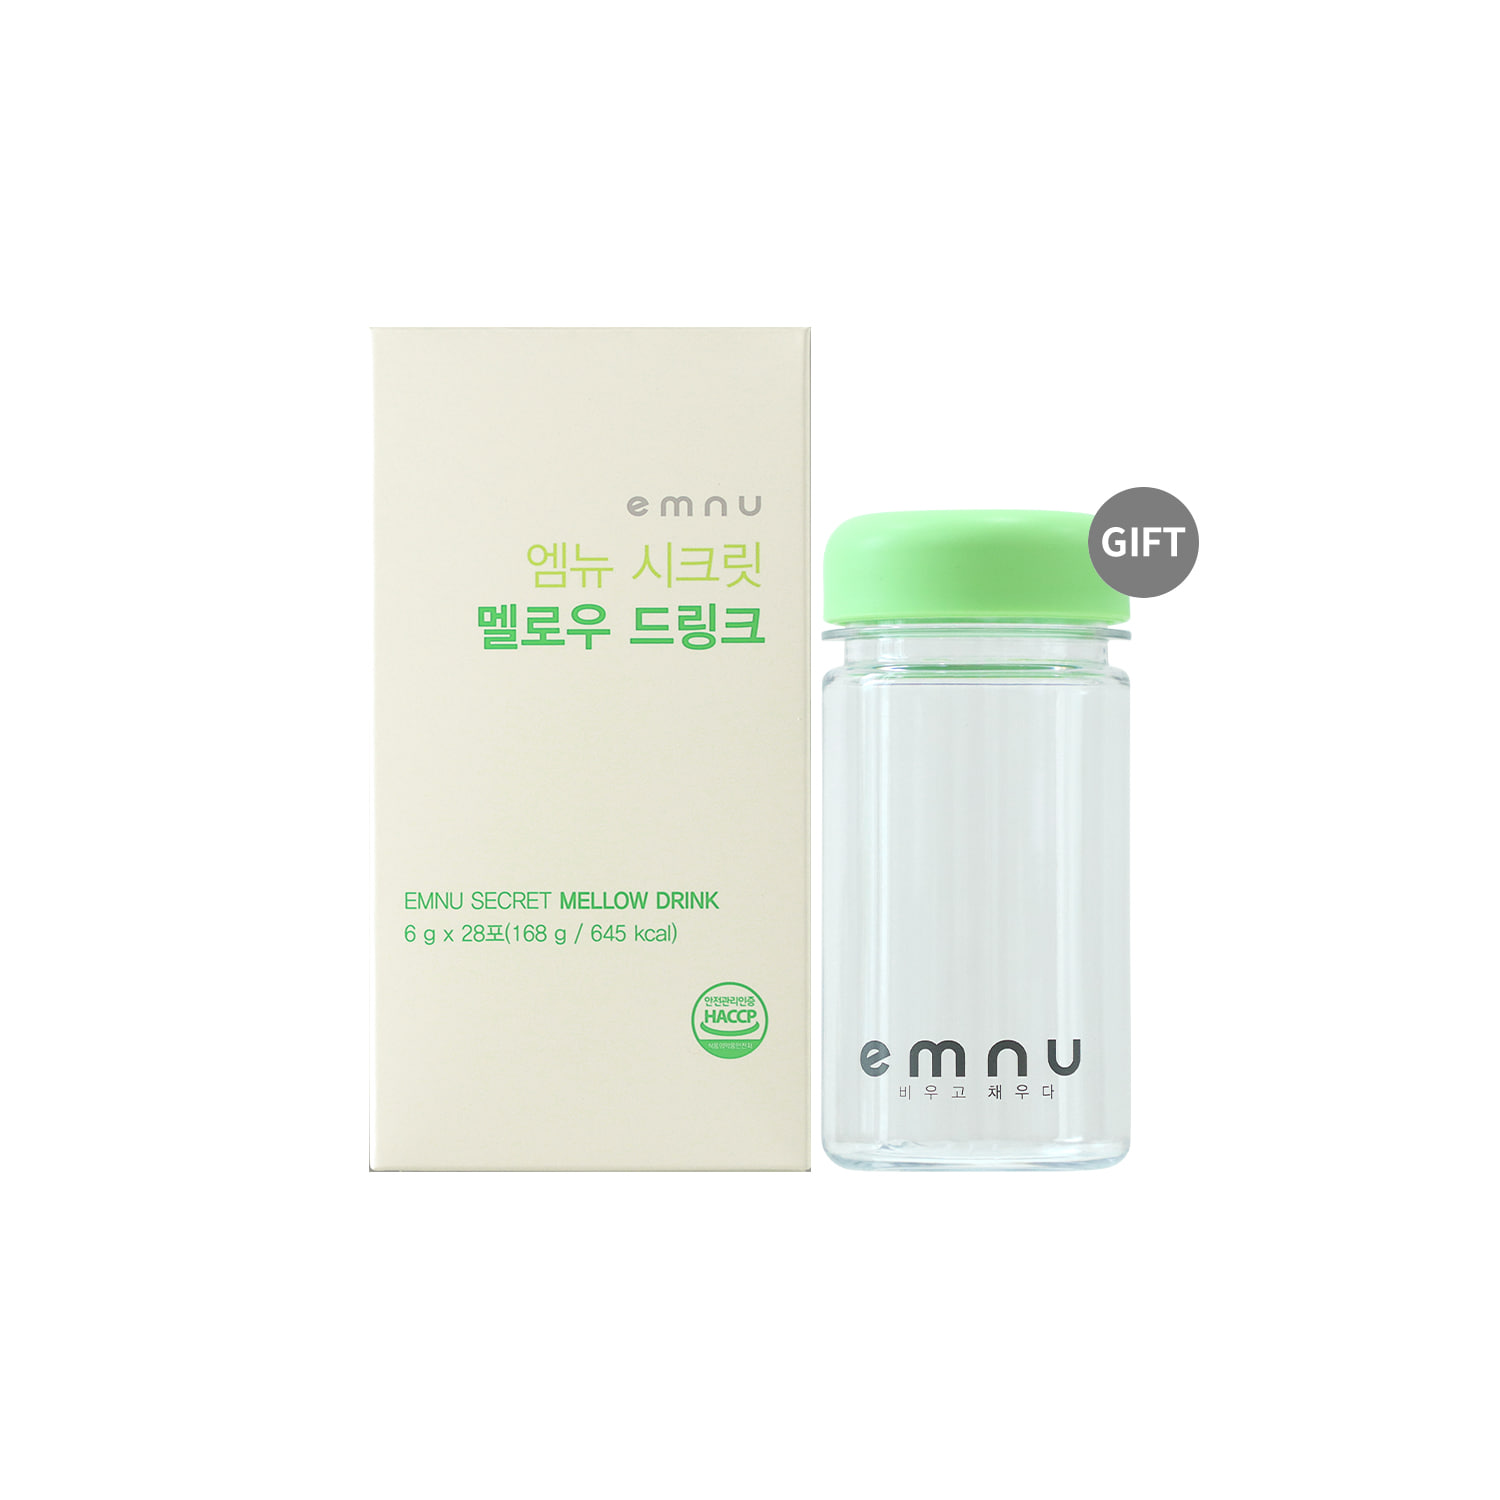 [3월 50% 할인] EMNU SECRET MELLOW DRINK 엠뉴 시크릿 멜로우 드링크 (28포) (텀블러(그린) 증정)